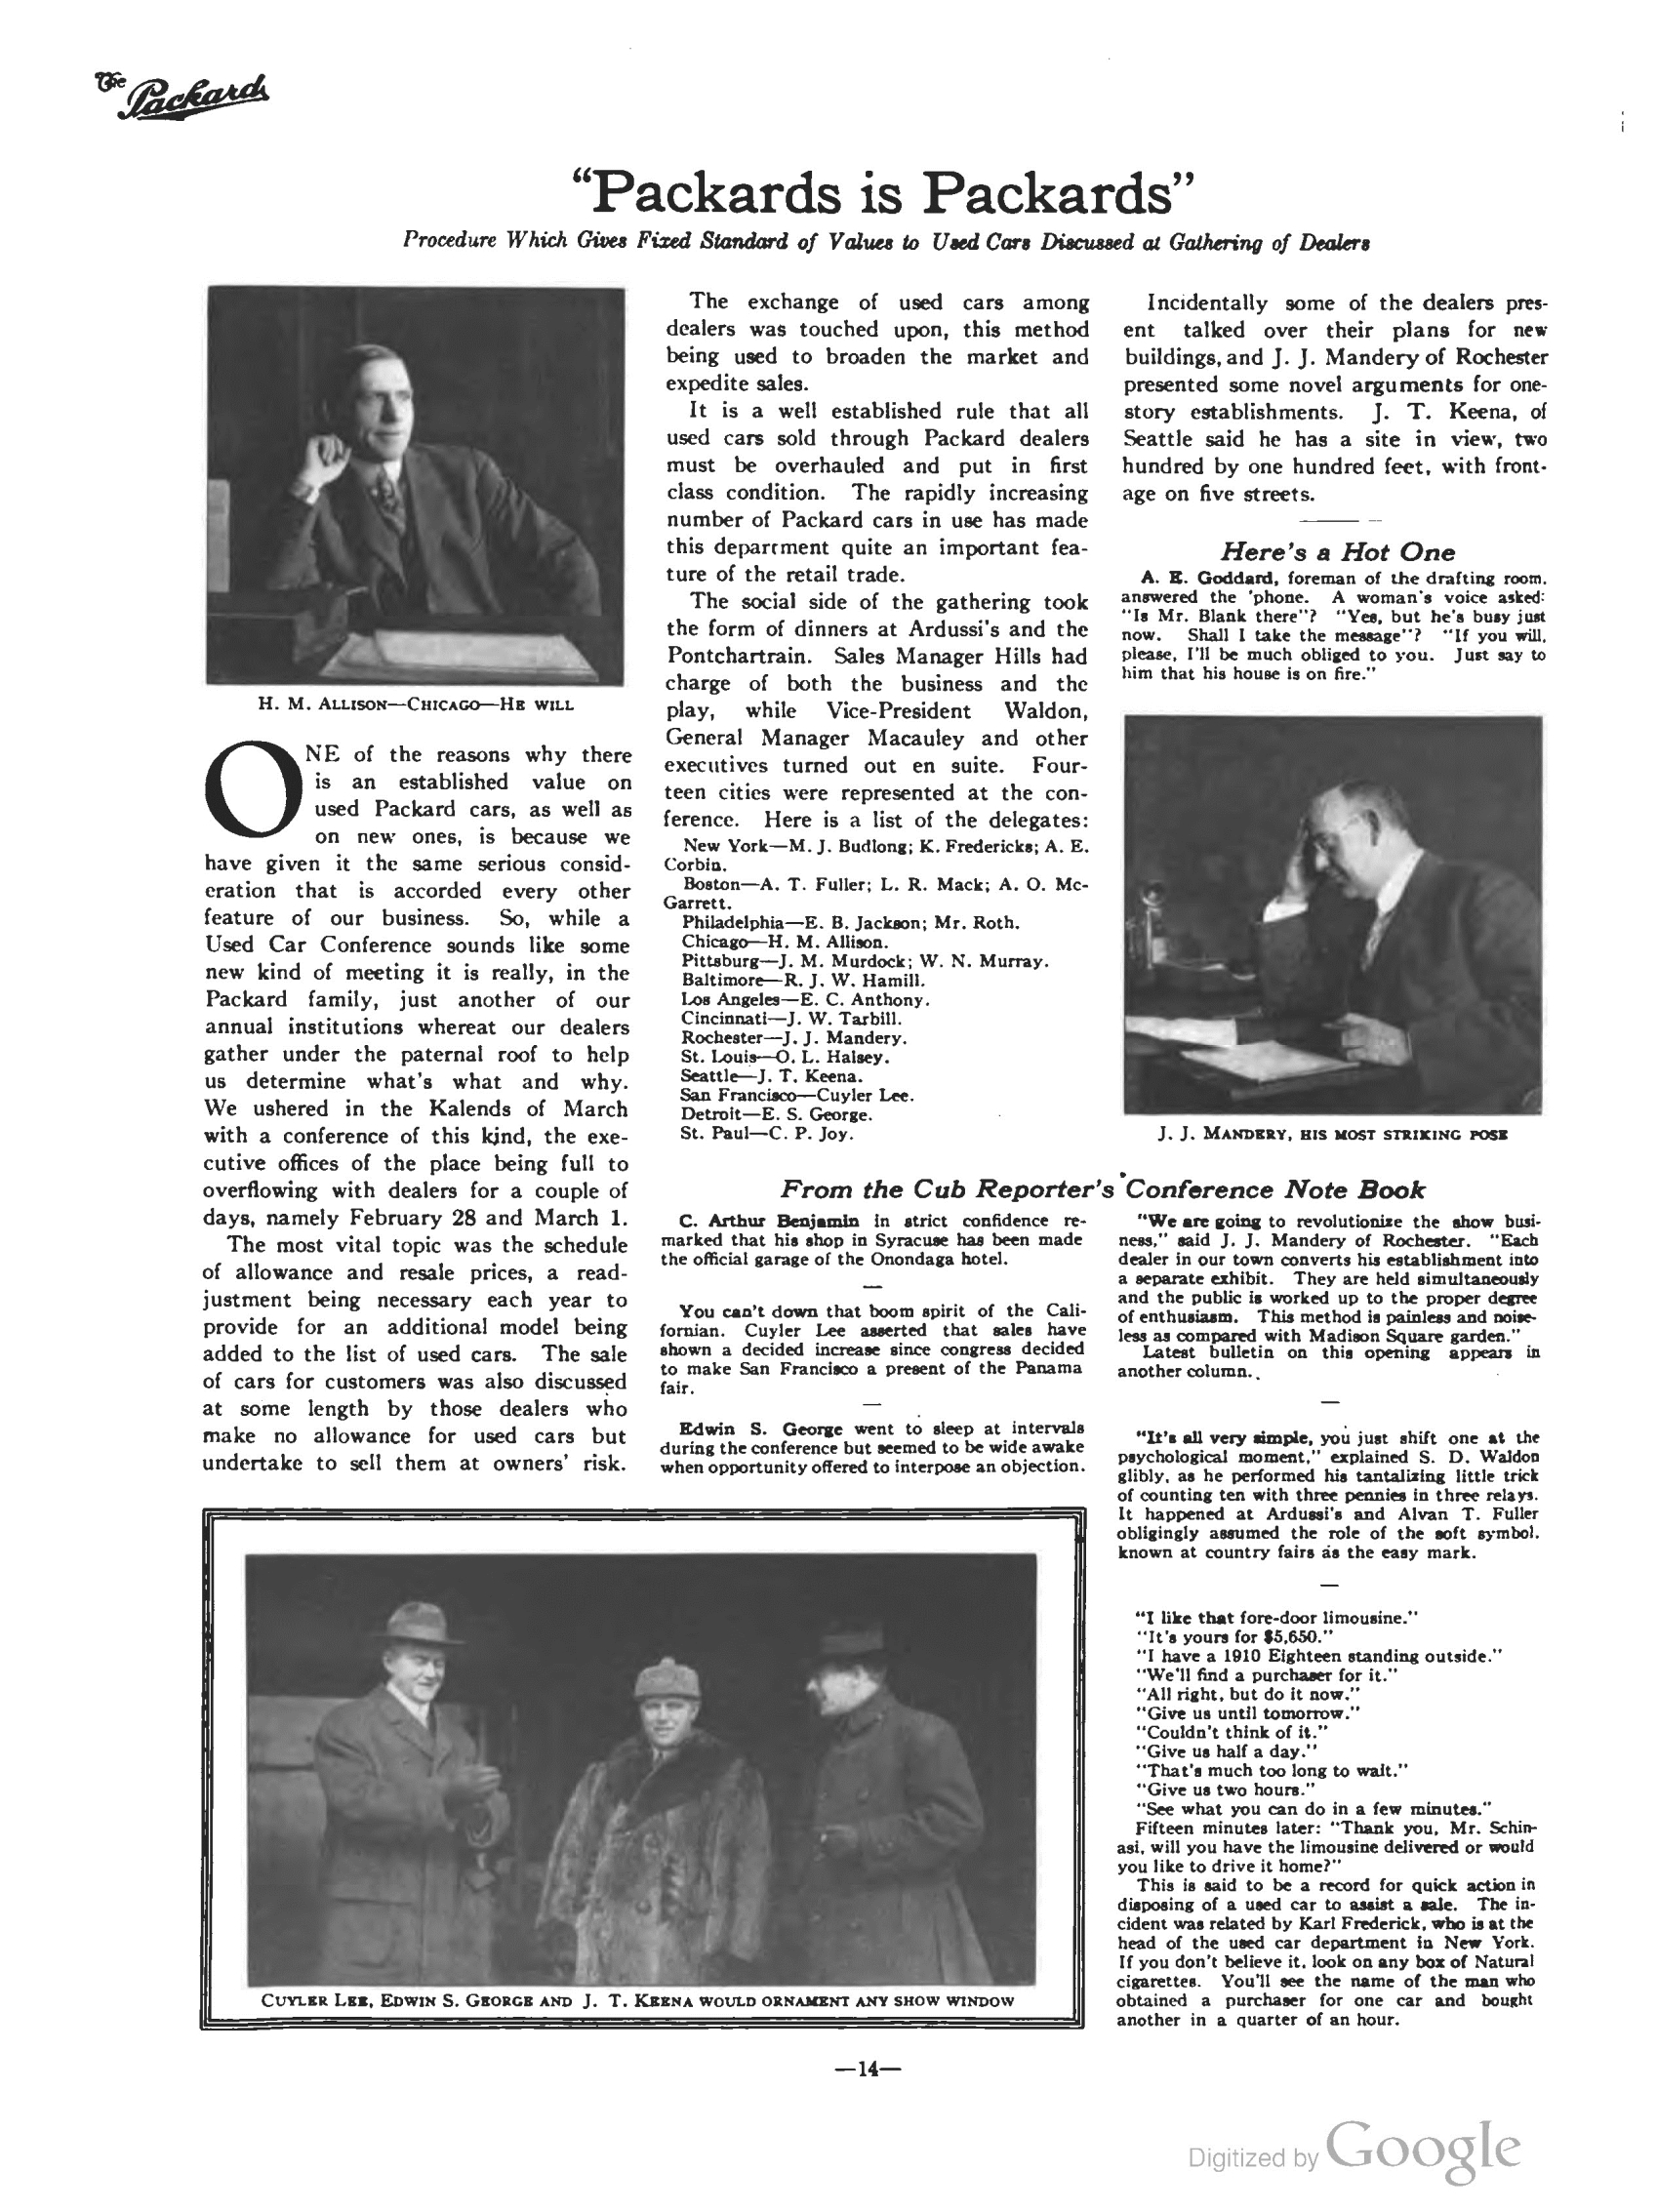 1911_The_Packard_Newsletter-056